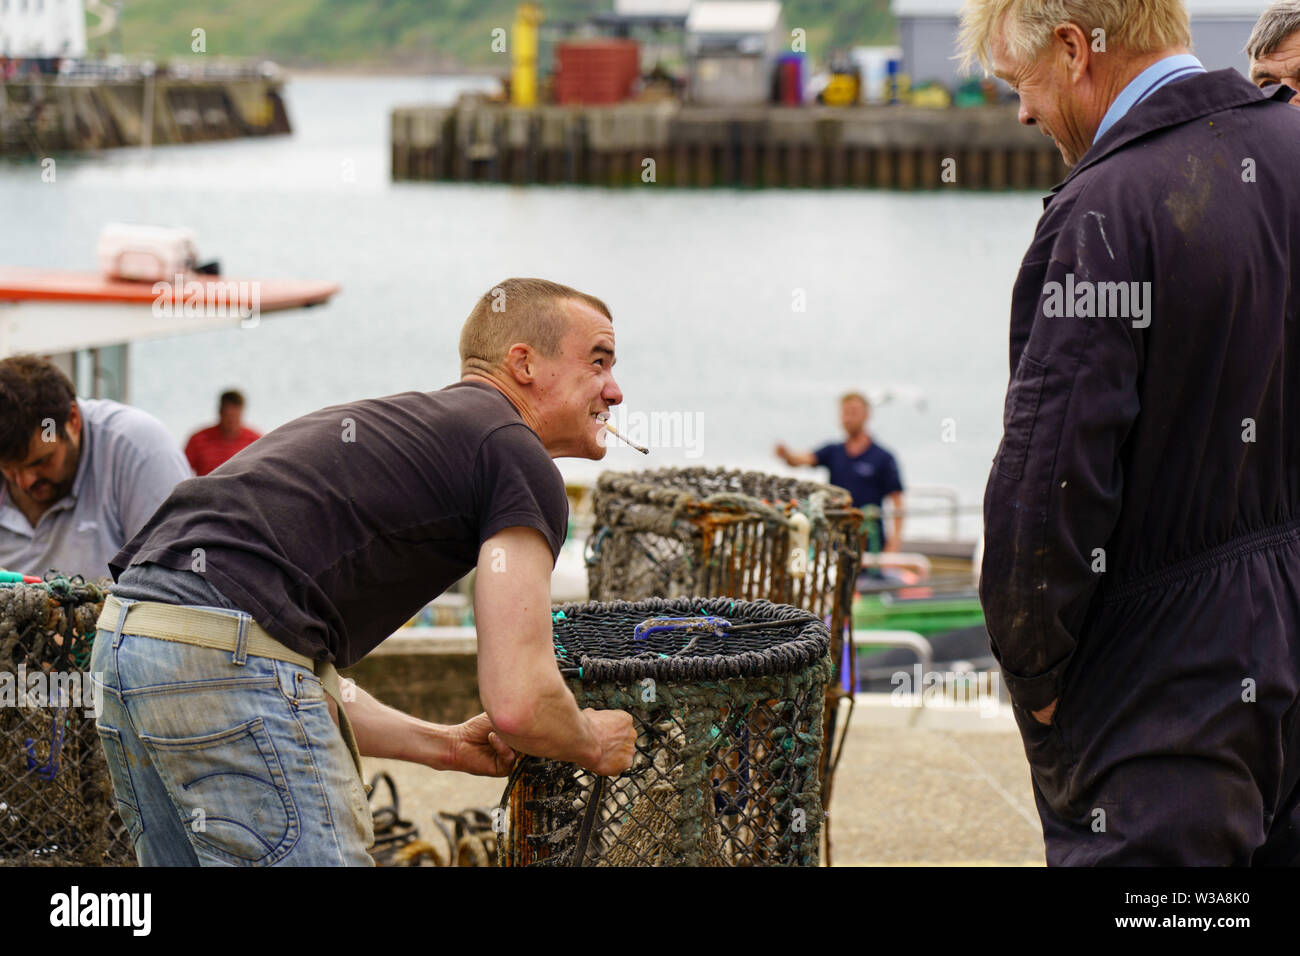 Pêcheur fumant une cigarette tout en réparant des pots de homard sur un port en bord de mer à Scarborough, North Yorkshire, Angleterre, Royaume-Uni. Banque D'Images